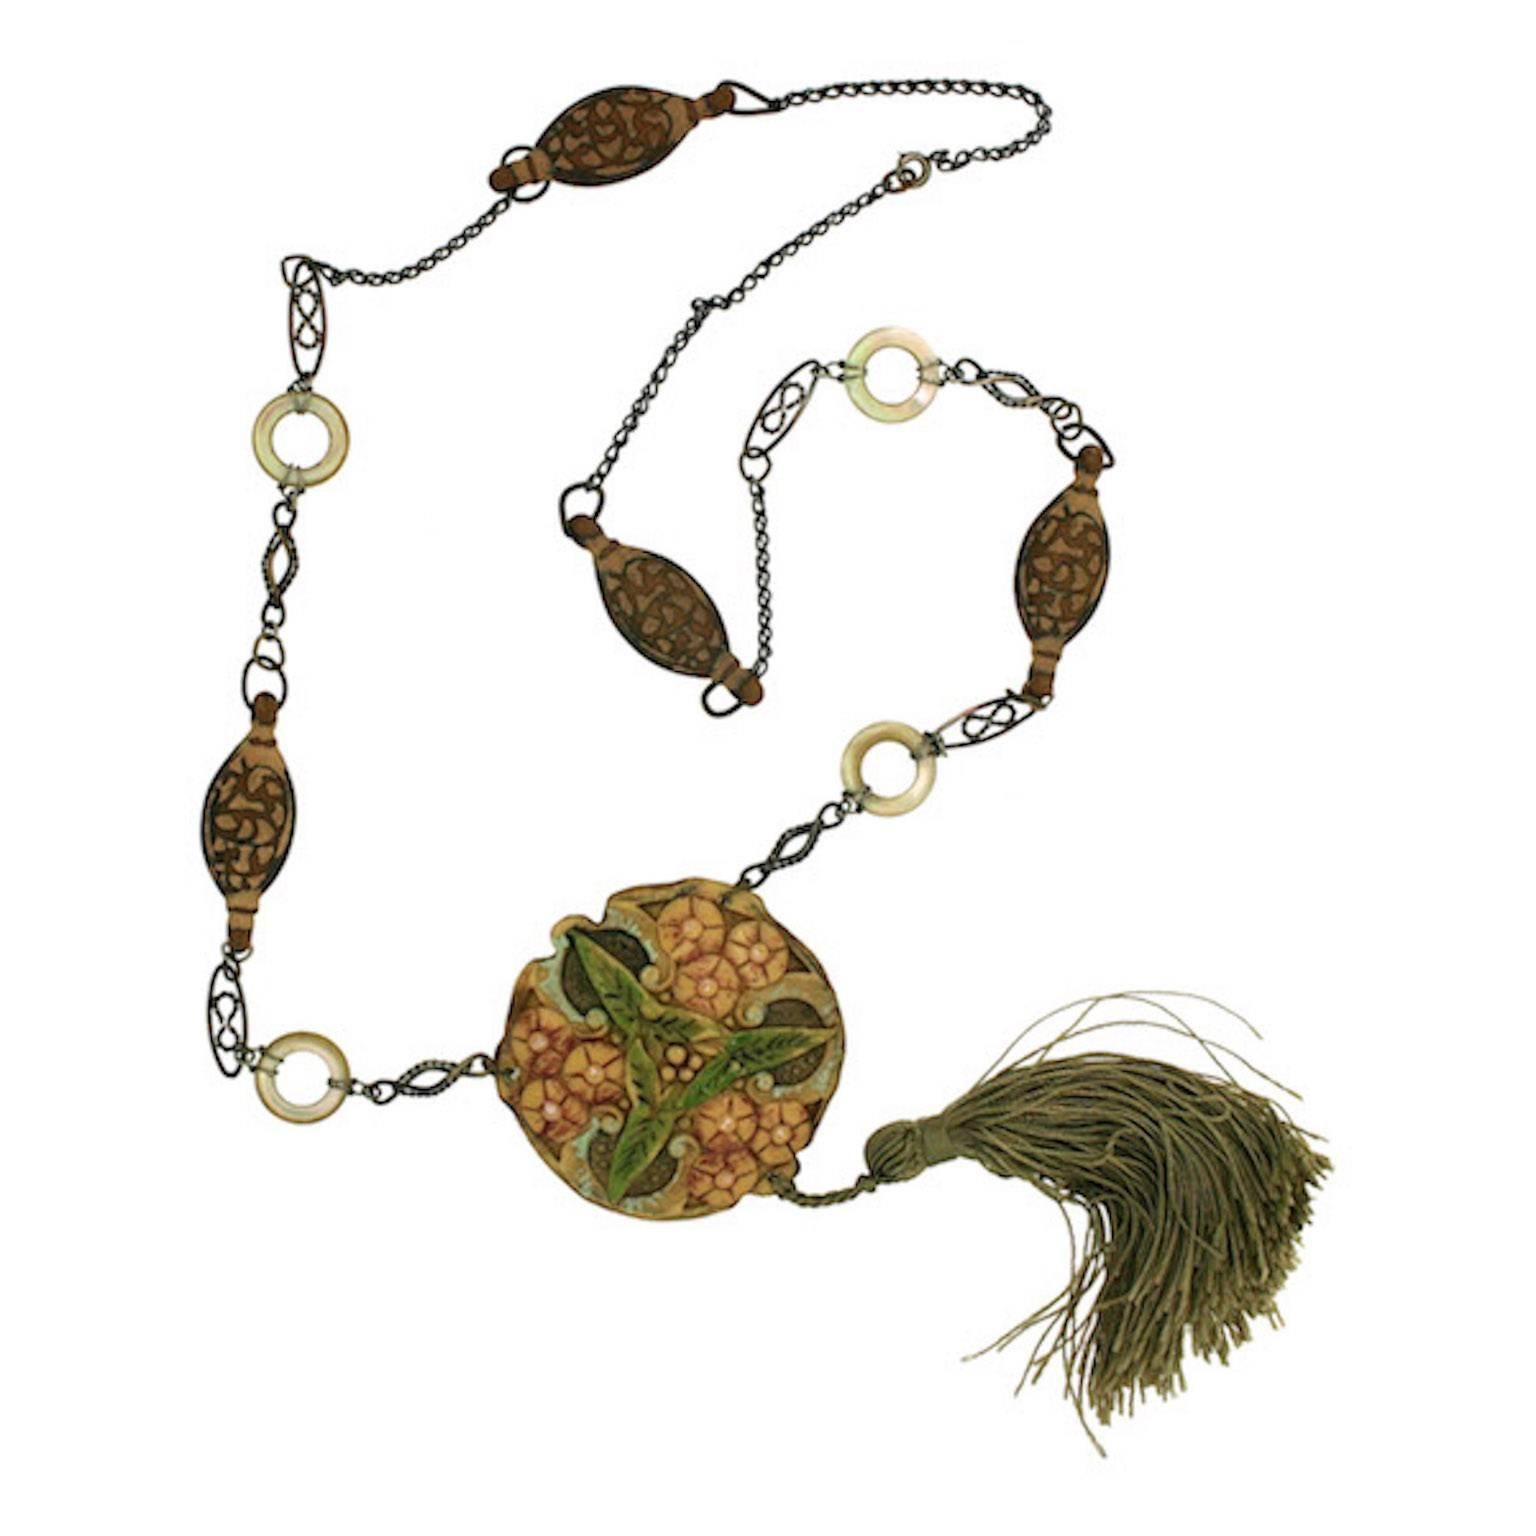 1910s Art Nouveau Celluloid Vintage Pendant Necklace